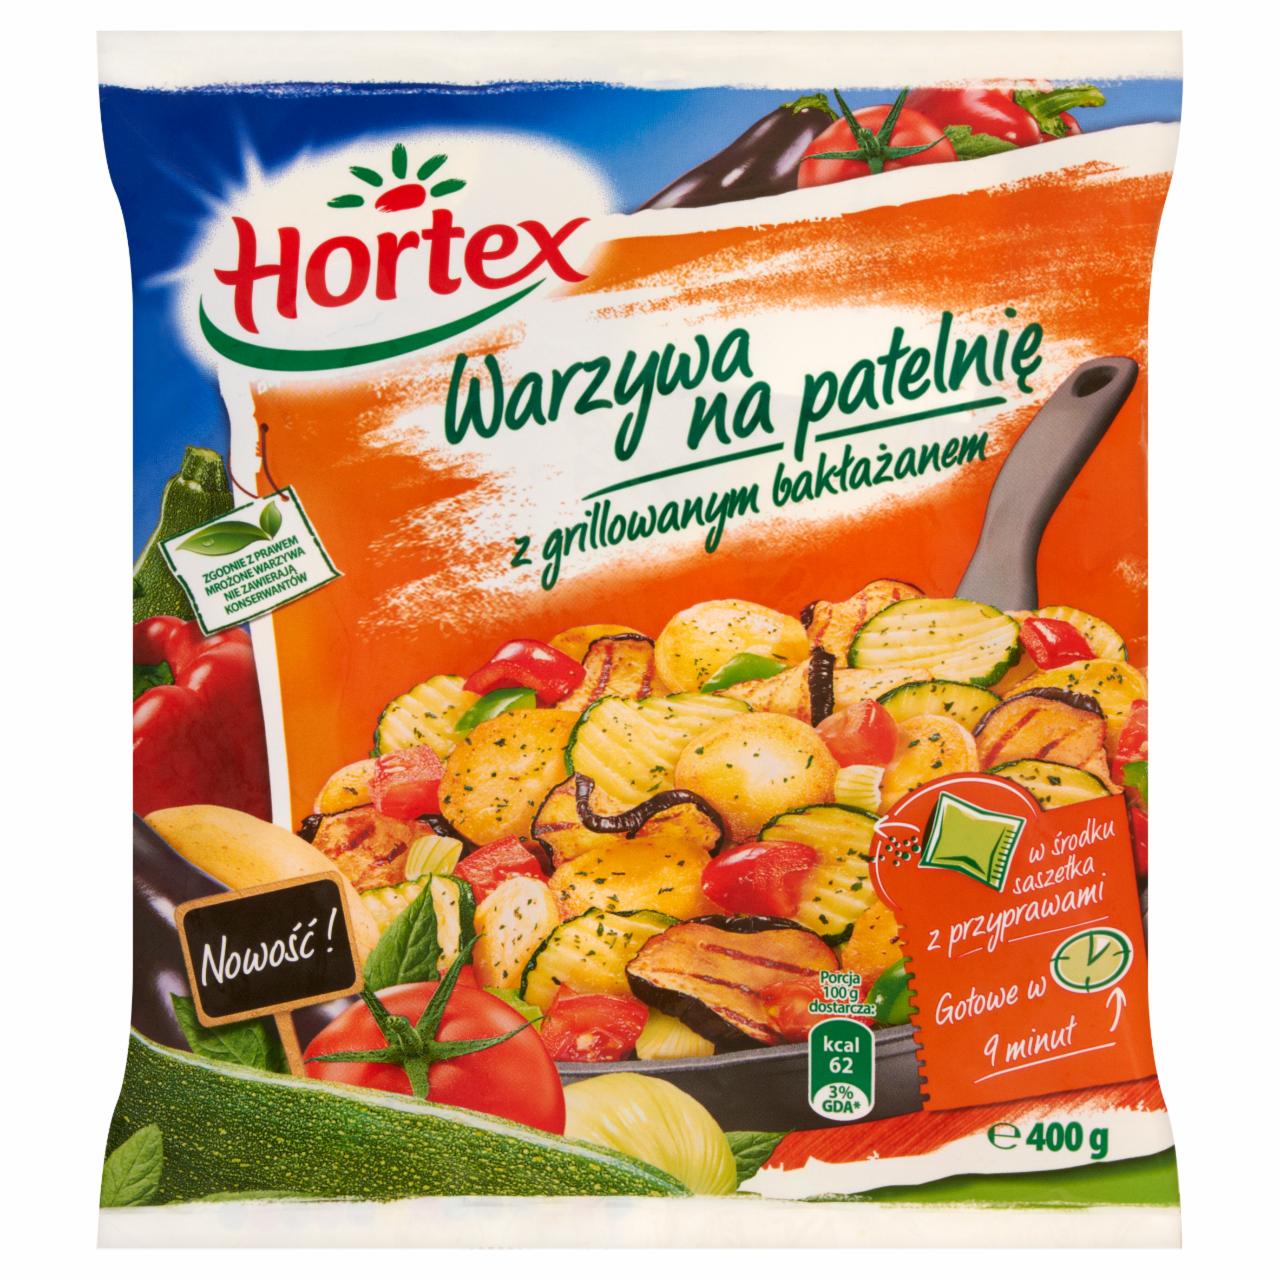 Zdjęcia - Hortex Warzywa na patelnię z grillowanym bakłażanem 400 g